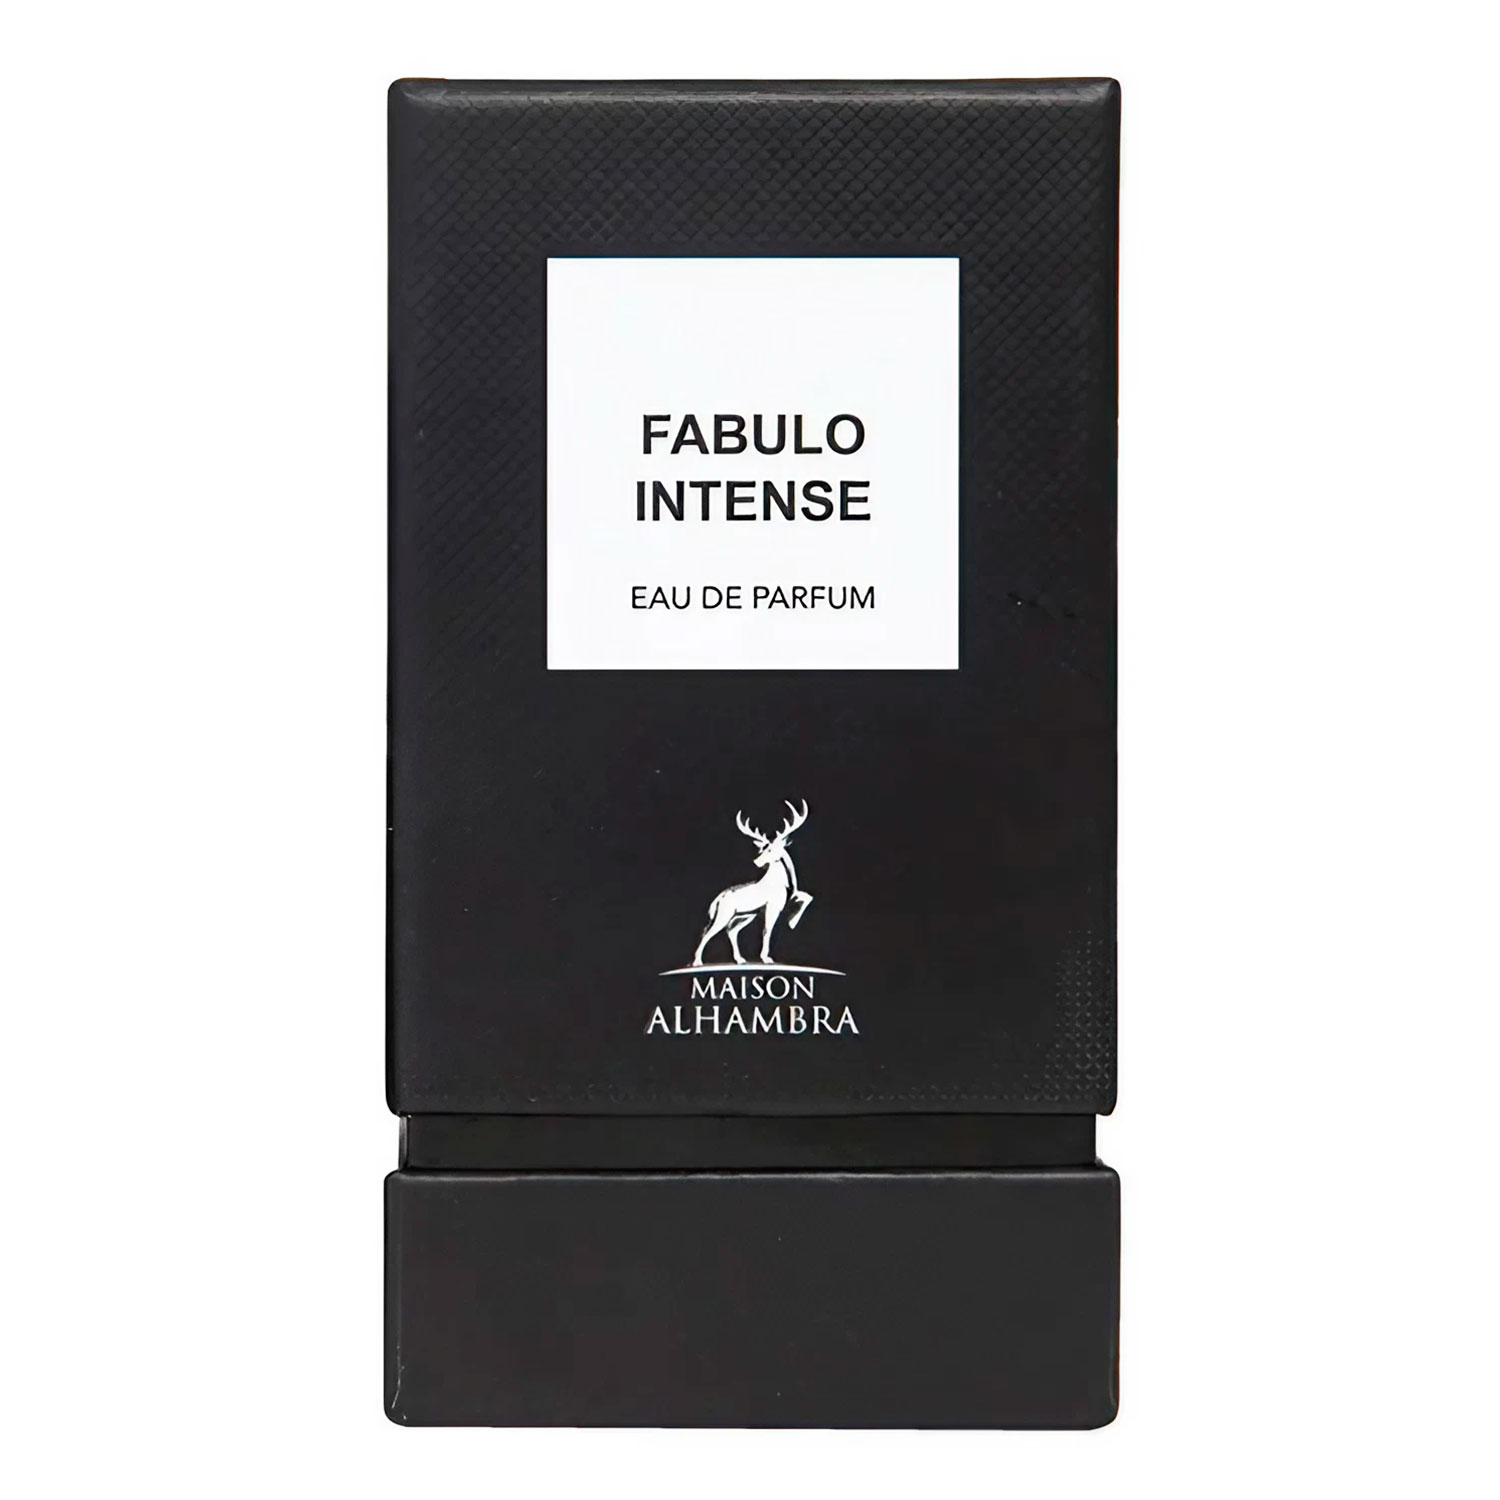 Perfume Maison Alhambra Fabulo Intense Eau de Parfum Unissex 80ml